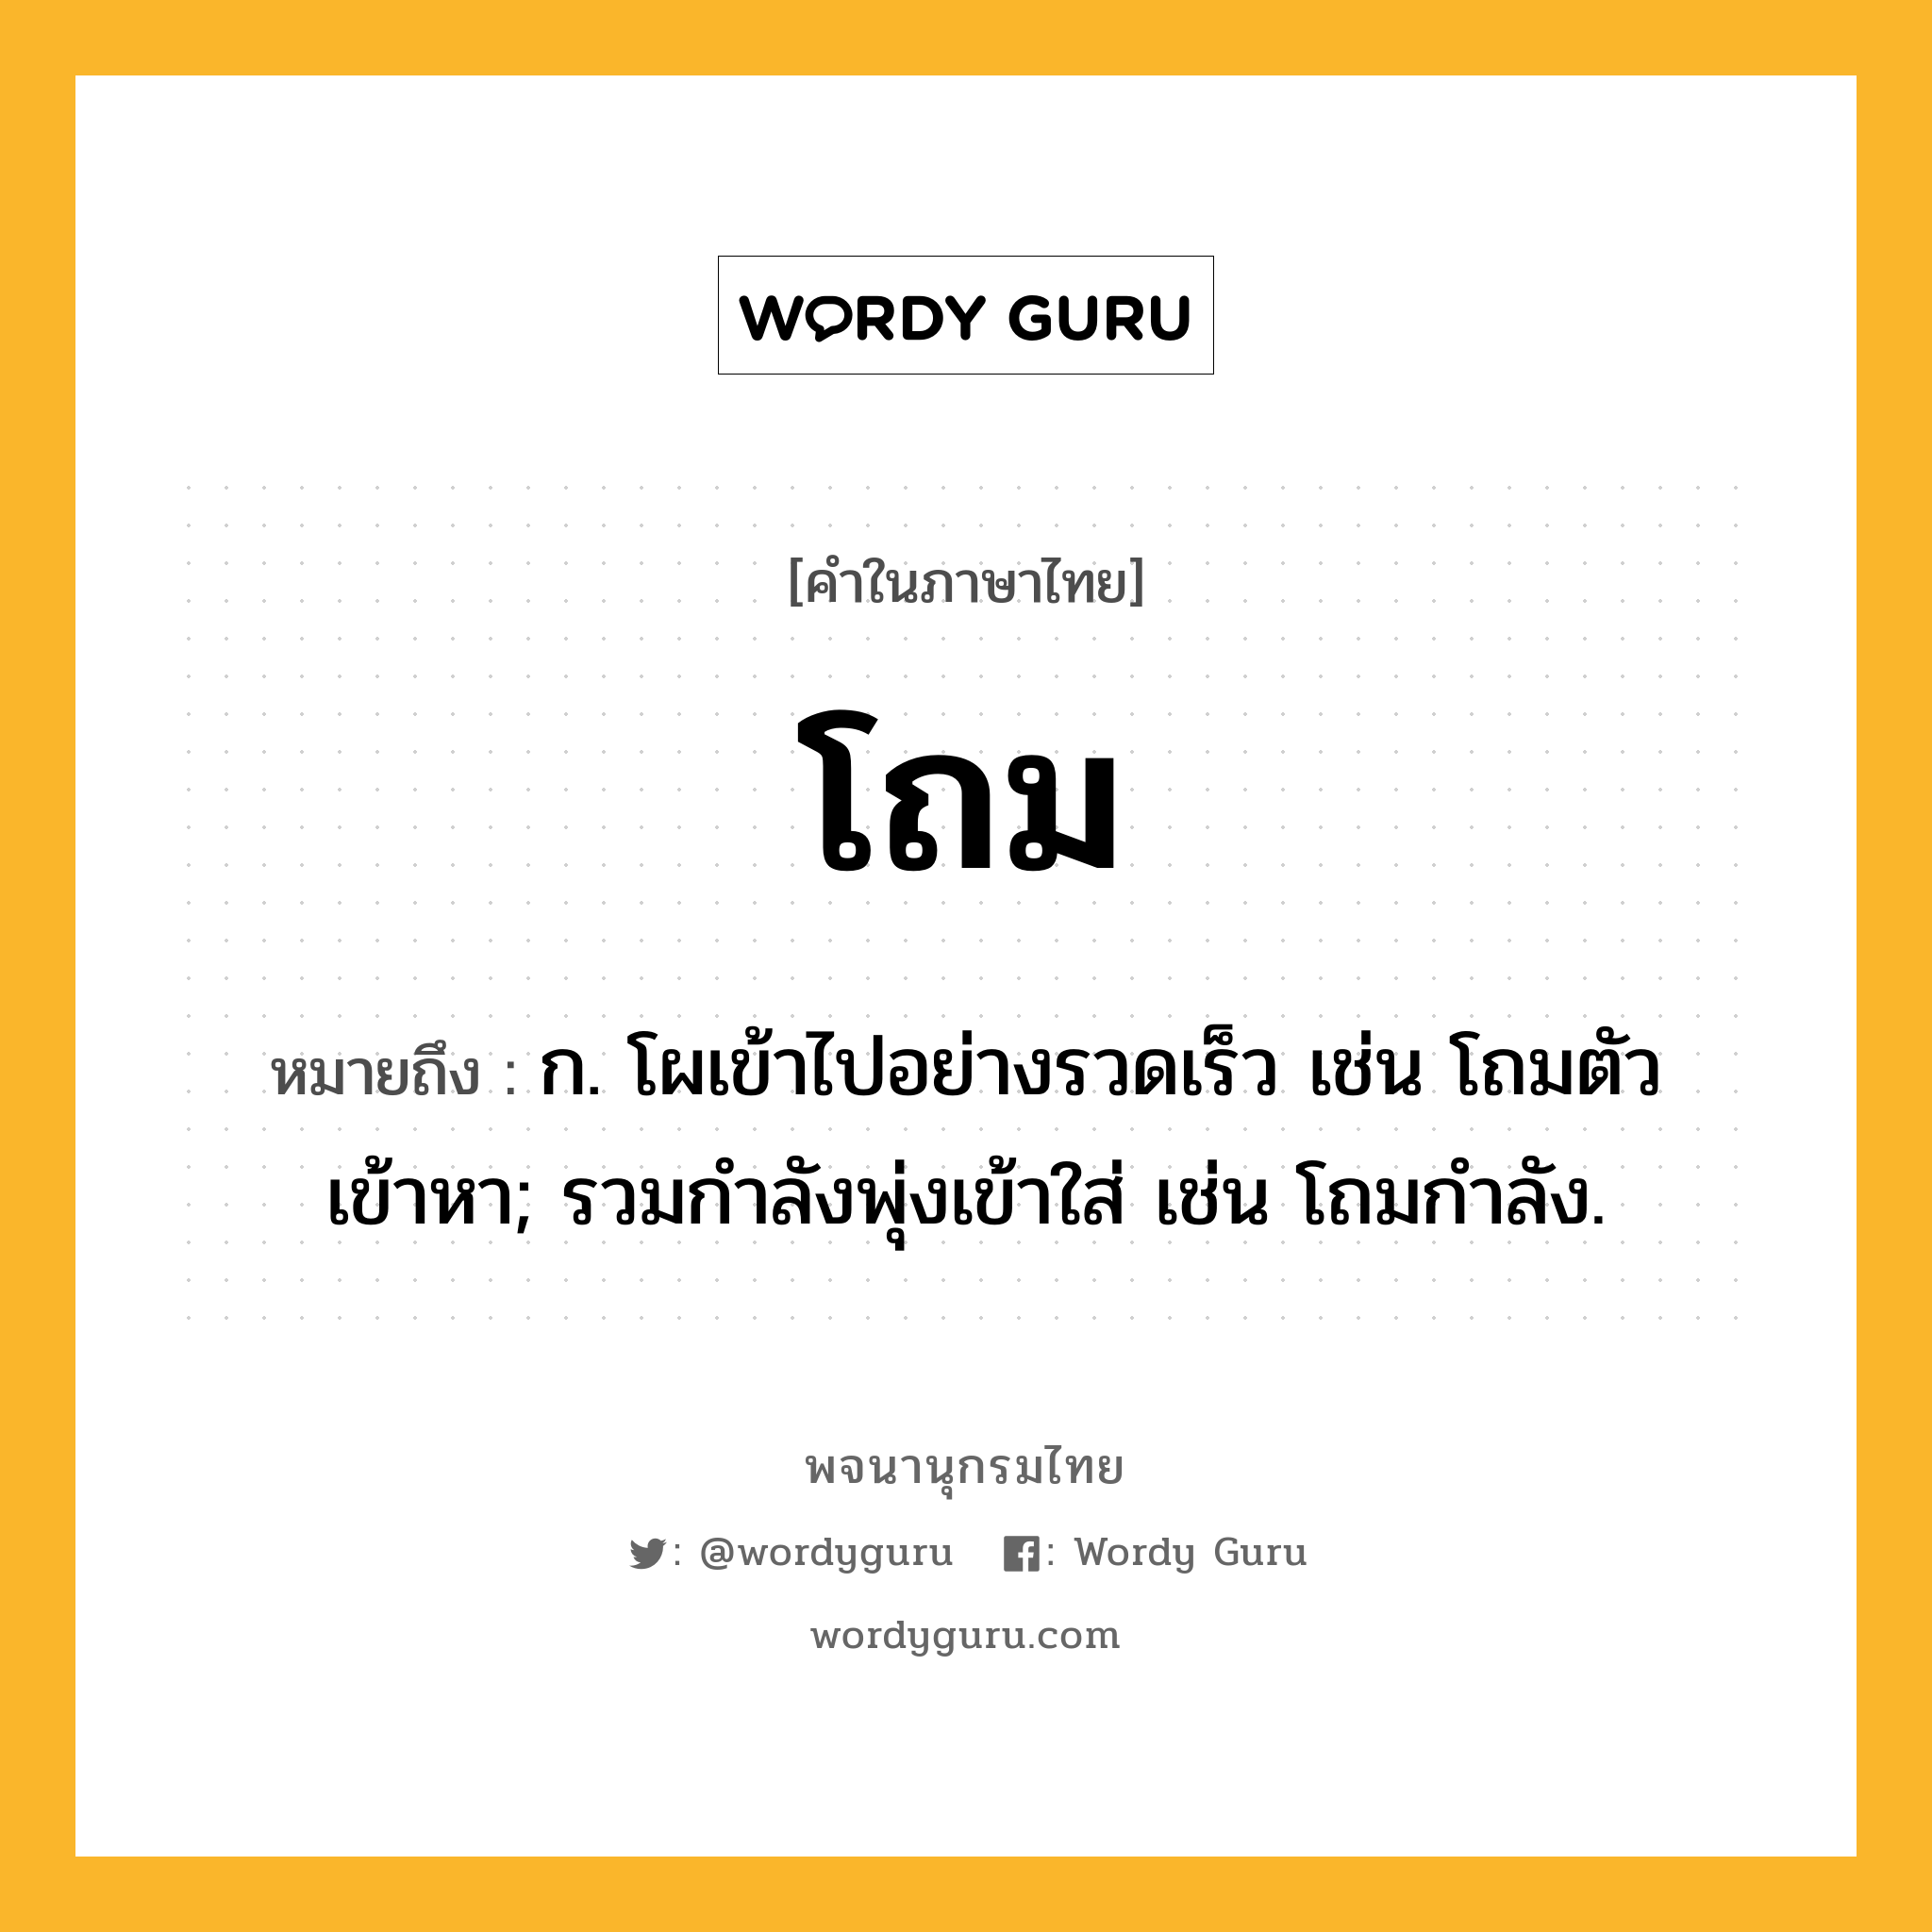 โถม หมายถึงอะไร?, คำในภาษาไทย โถม หมายถึง ก. โผเข้าไปอย่างรวดเร็ว เช่น โถมตัวเข้าหา; รวมกําลังพุ่งเข้าใส่ เช่น โถมกําลัง.